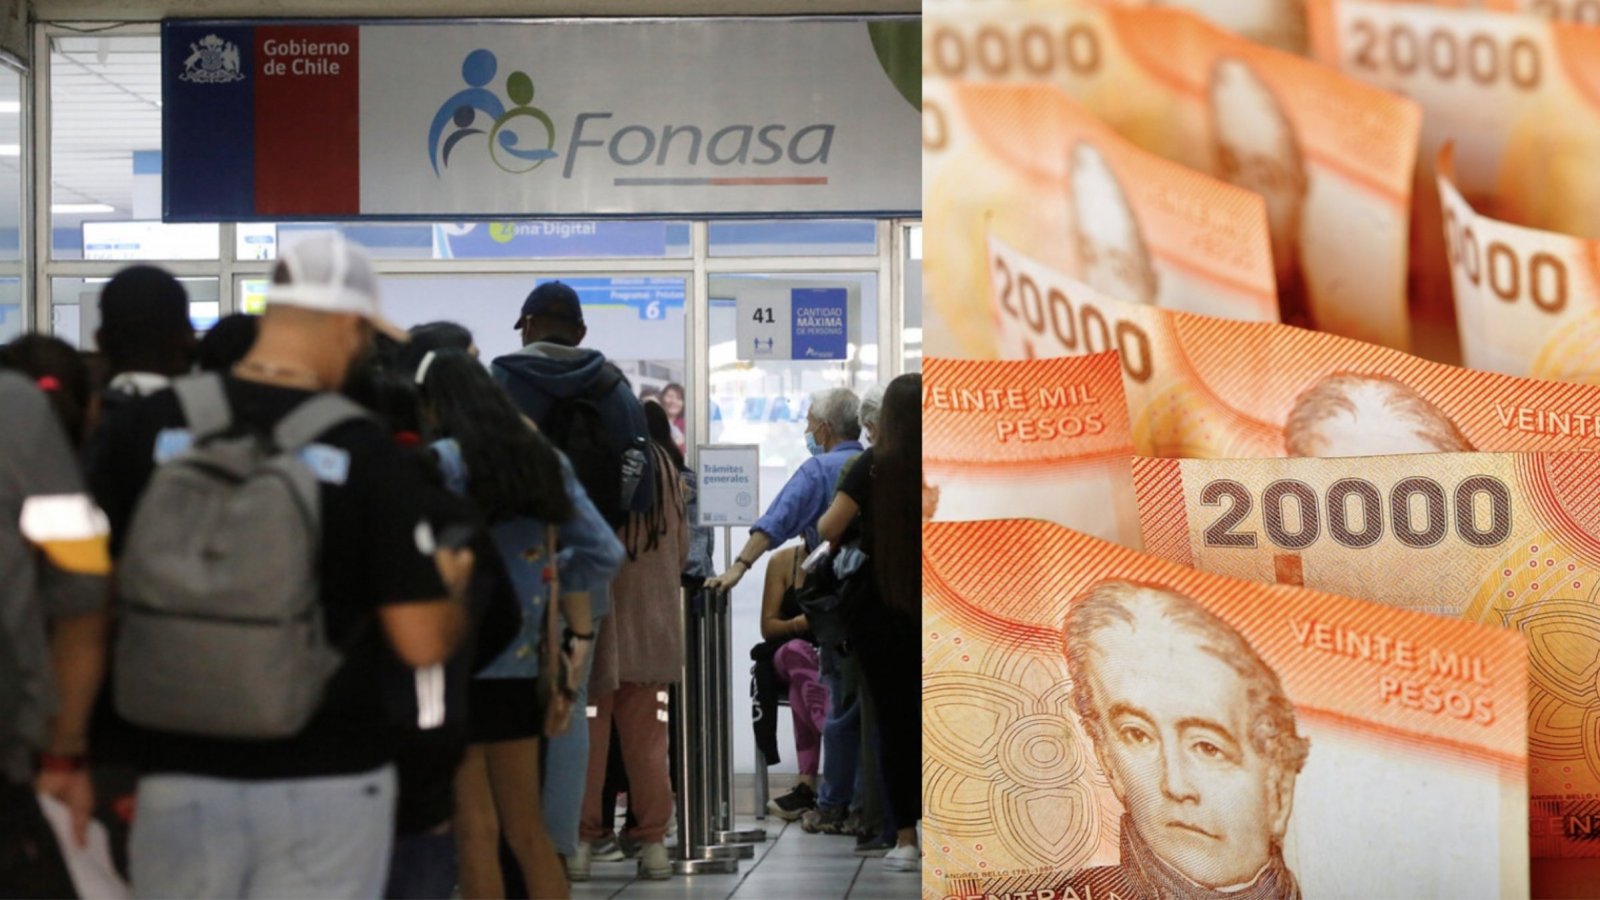 Personas en Fonasa y billetes de 20 mil pesos.